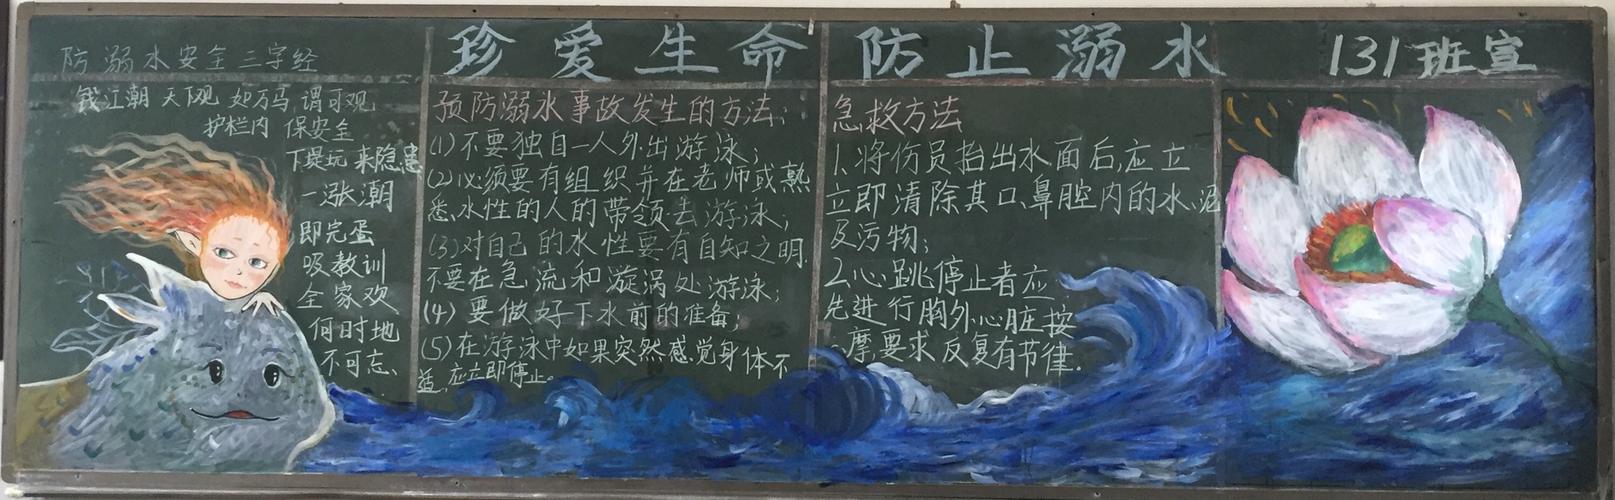 南涧民中珍爱生命预防溺水主题黑板报展示